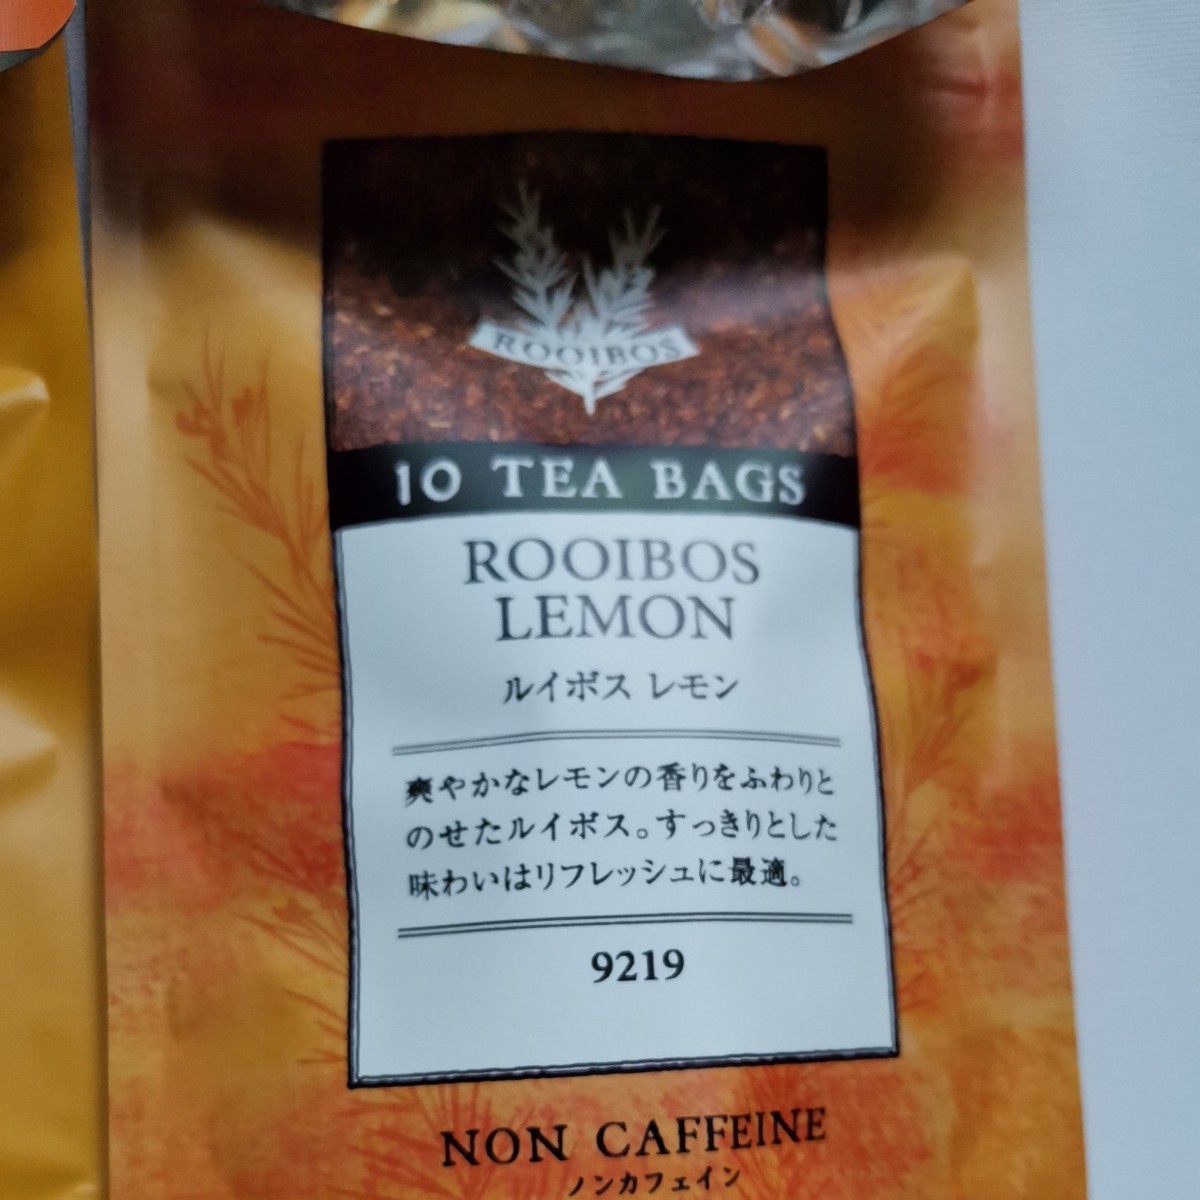 【送料無料】ルピシア 紅茶ティーバッグ デカフェ紅茶セット 6種類 子供も飲める 美味しいノンカフェイン紅茶 ルイボス ハーブ